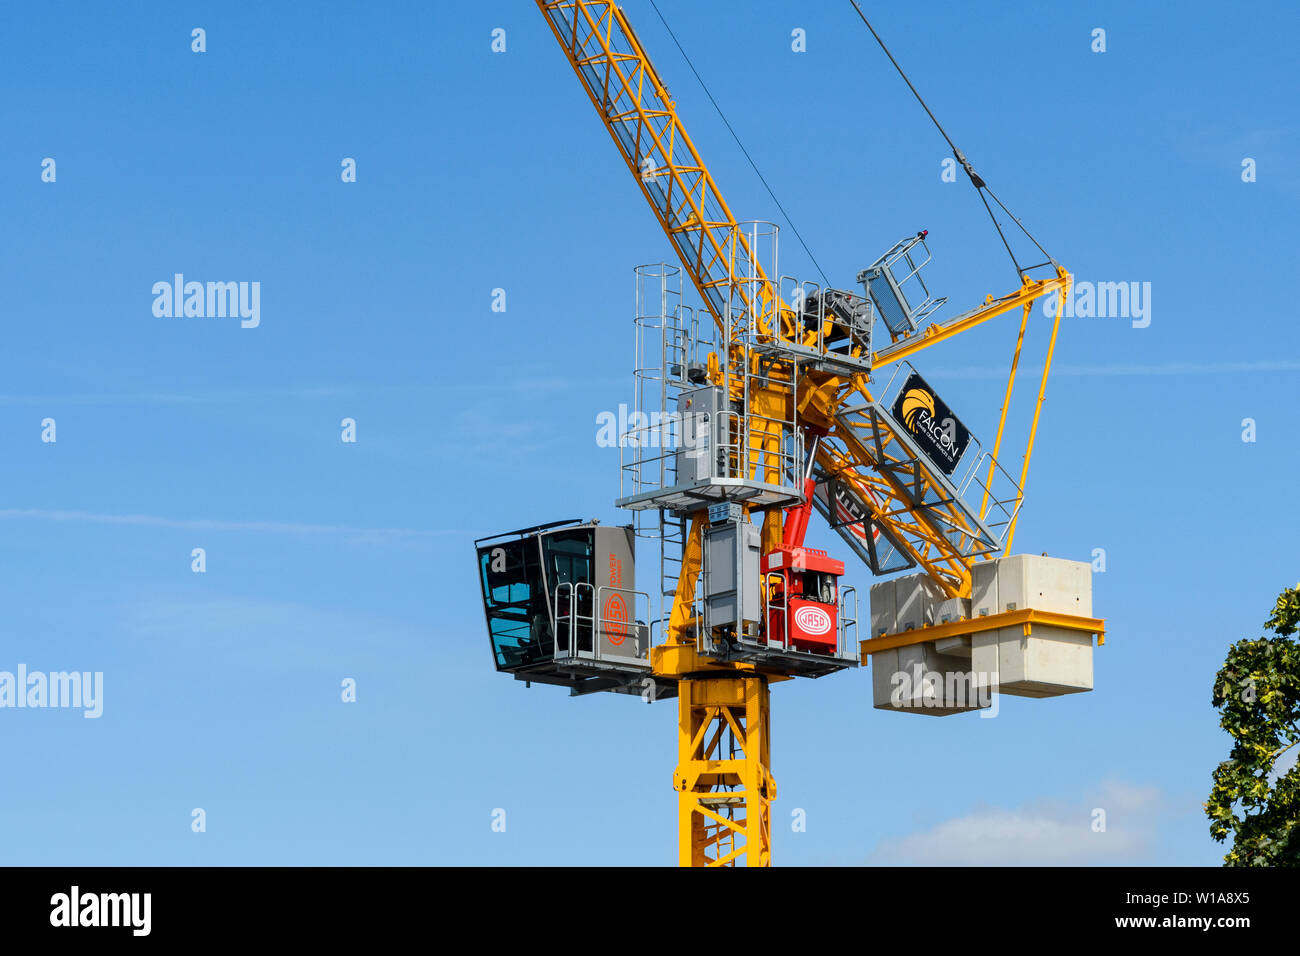 Tall amarillo grúa torre de elevación y trabajando en la construcción sitio contra el cielo azul profundo (cabina, mástil, pluma y pesos), York, North Yorkshire, Inglaterra, Reino Unido. Foto de stock